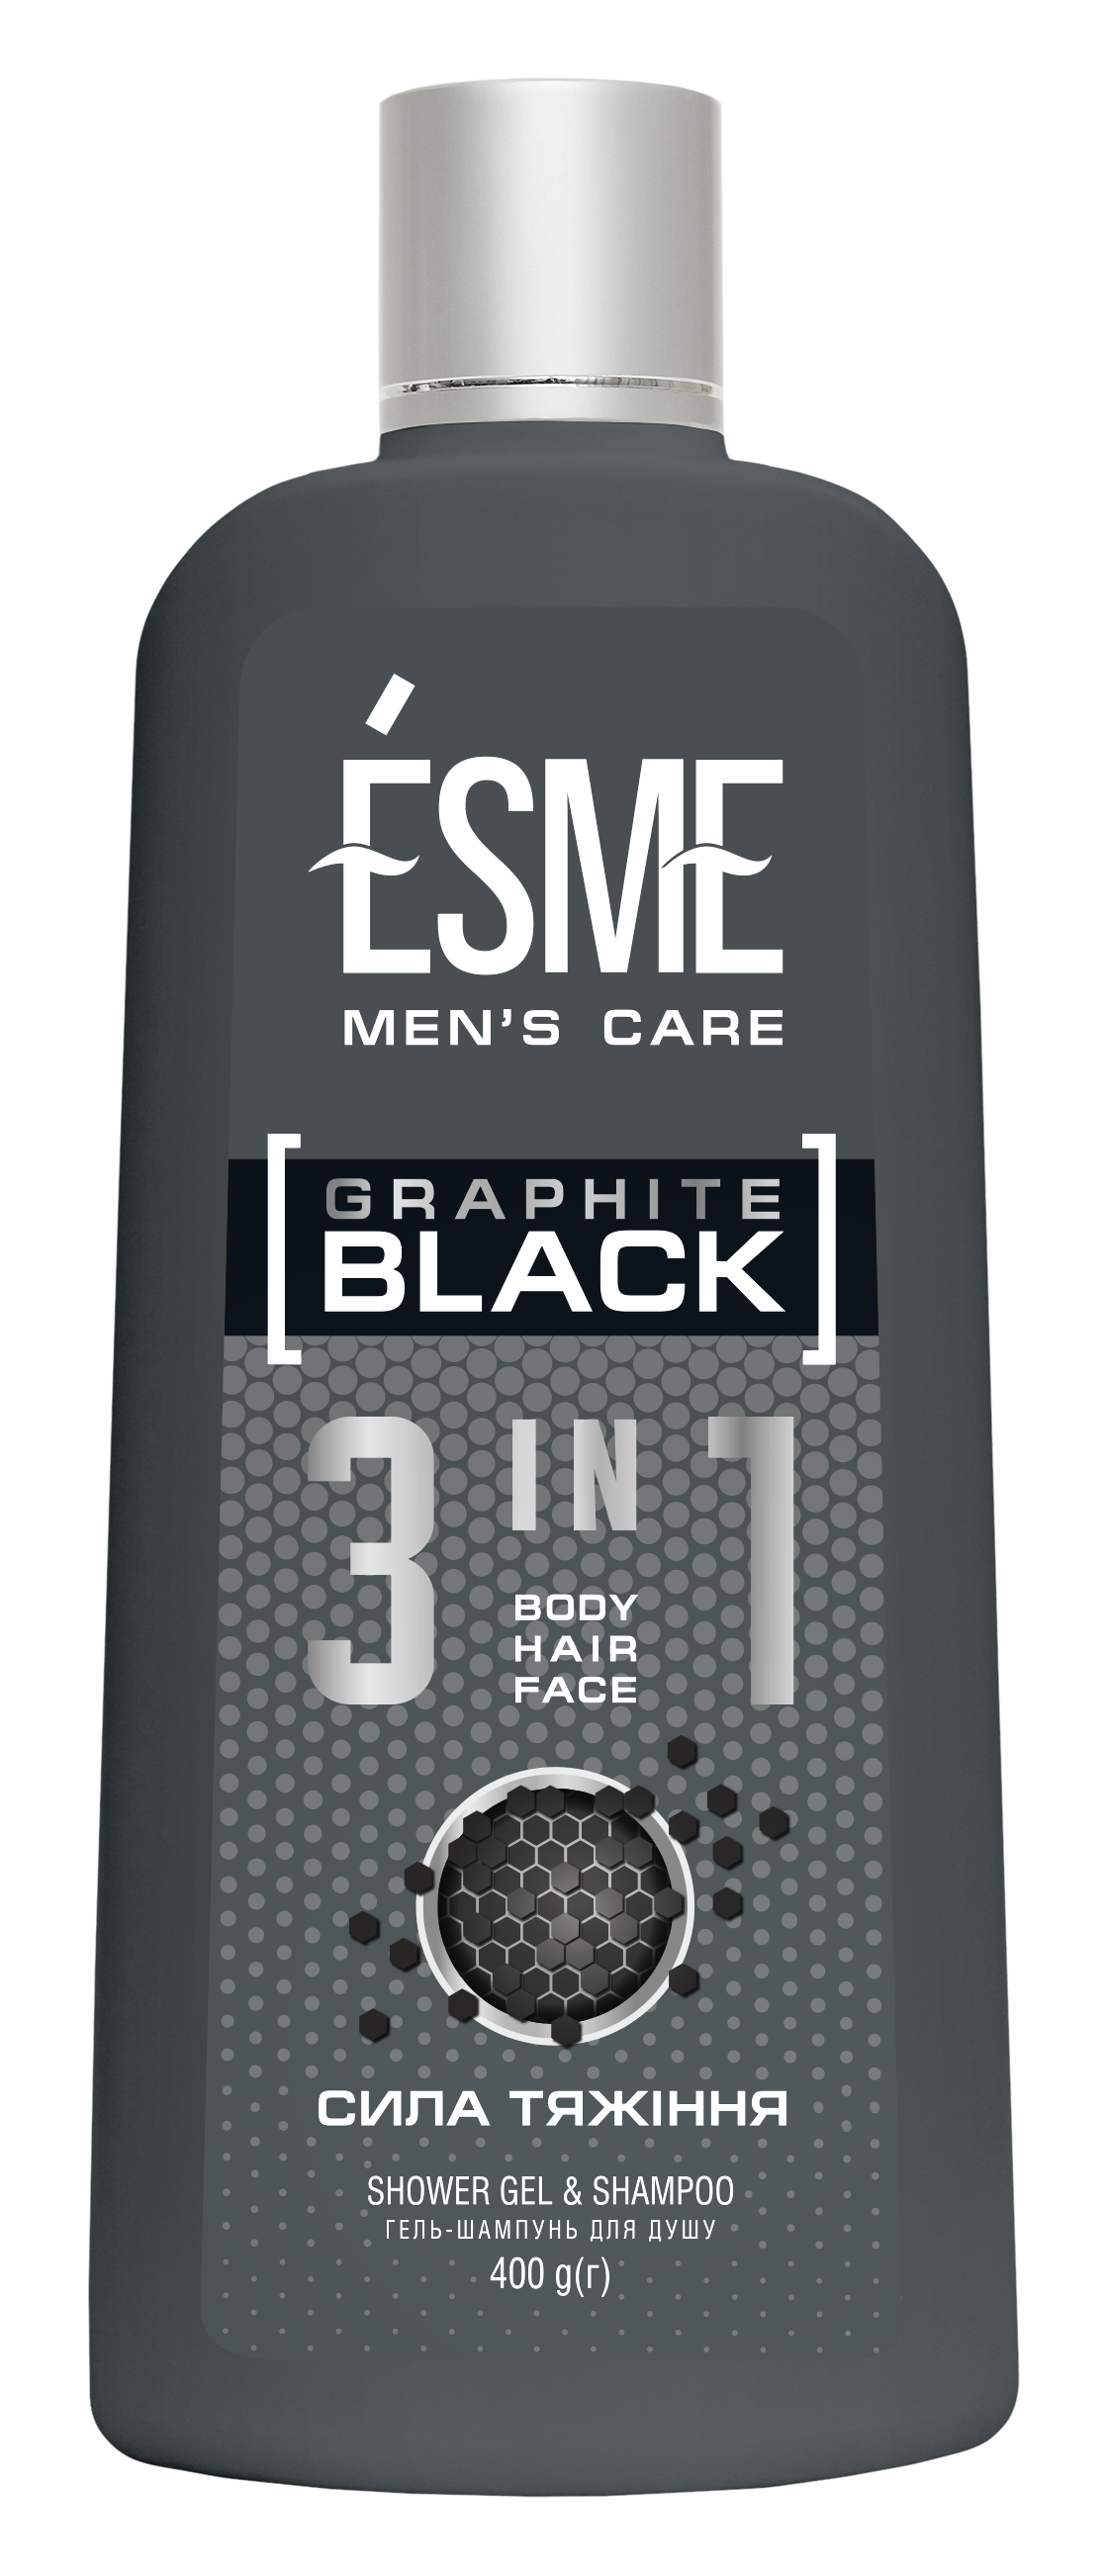 Гель-шампунь для душа Esme Graphite Black, 400 мл - фото 1